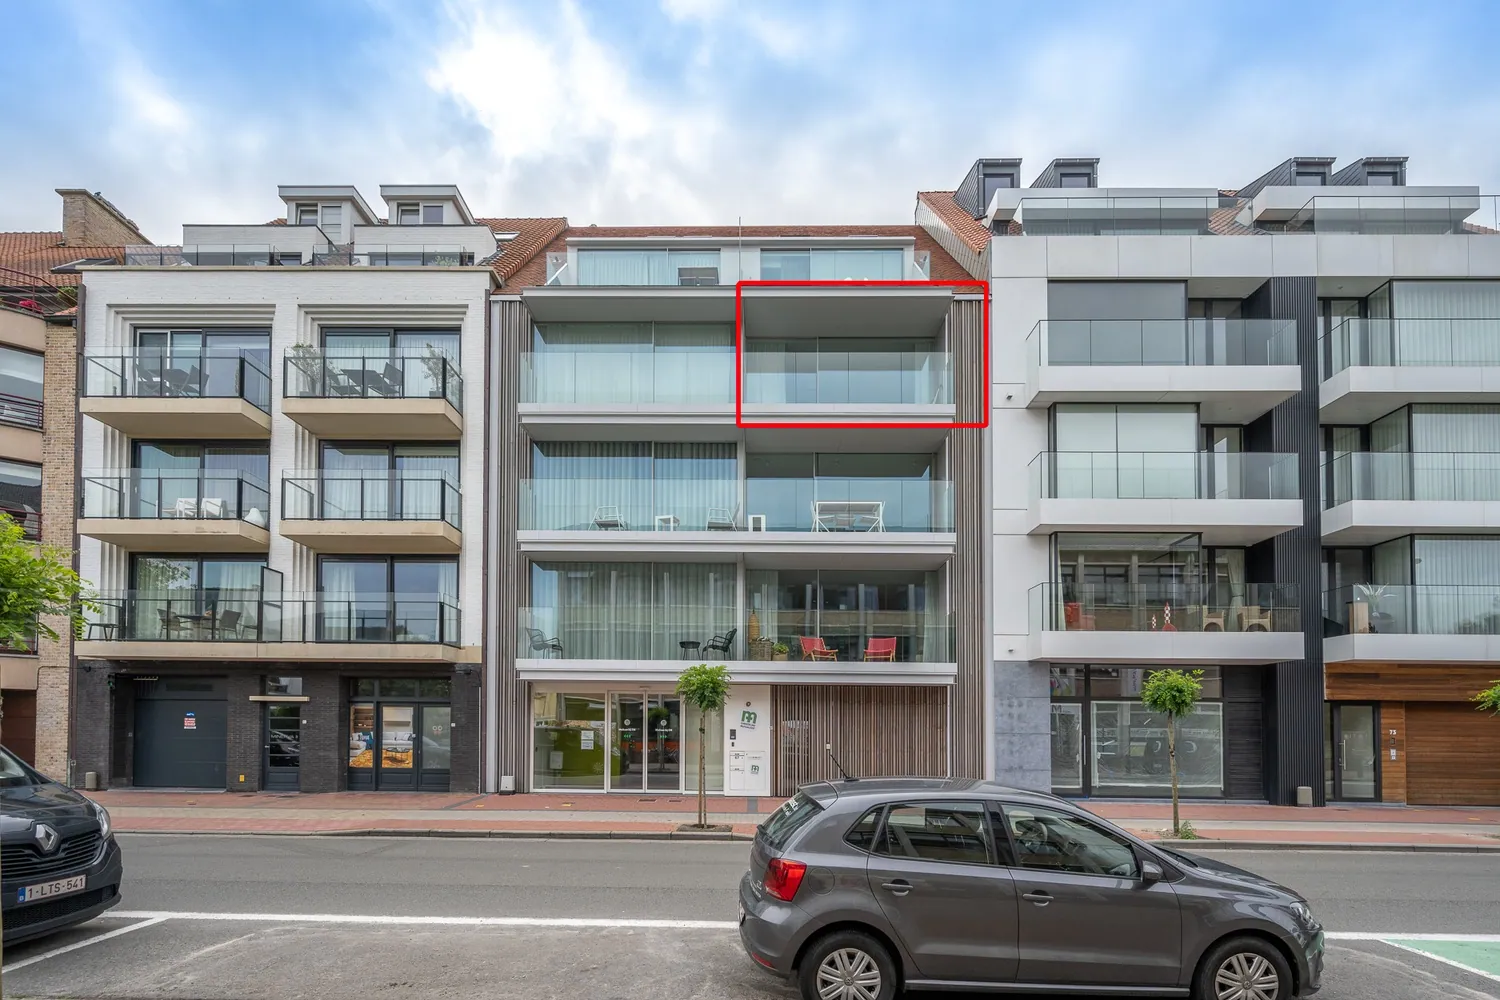 Appartement très récent (2020) avec une finition très luxueuse et une vue ouverte au Piers De Raveschootlaan. Possibilité d'acheter un garage dans l'immeuble.